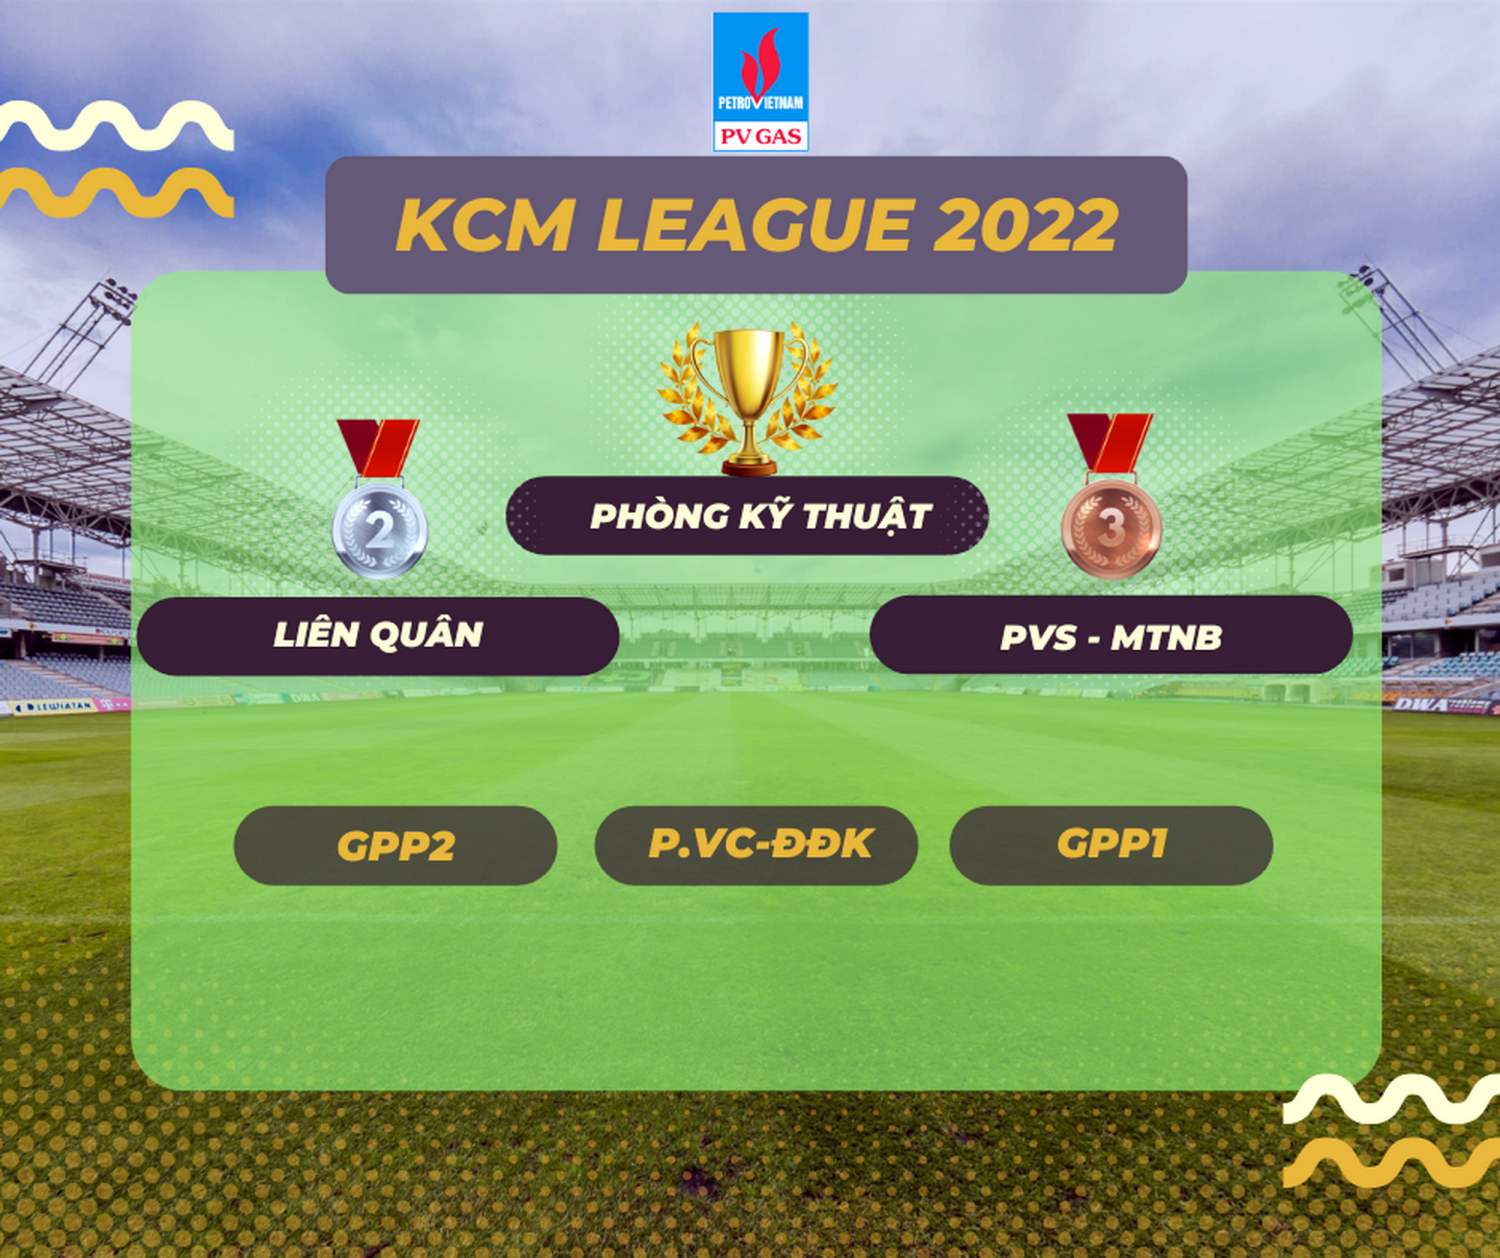 Poster công bố Kết quả Giải bóng đá KCM League 2022